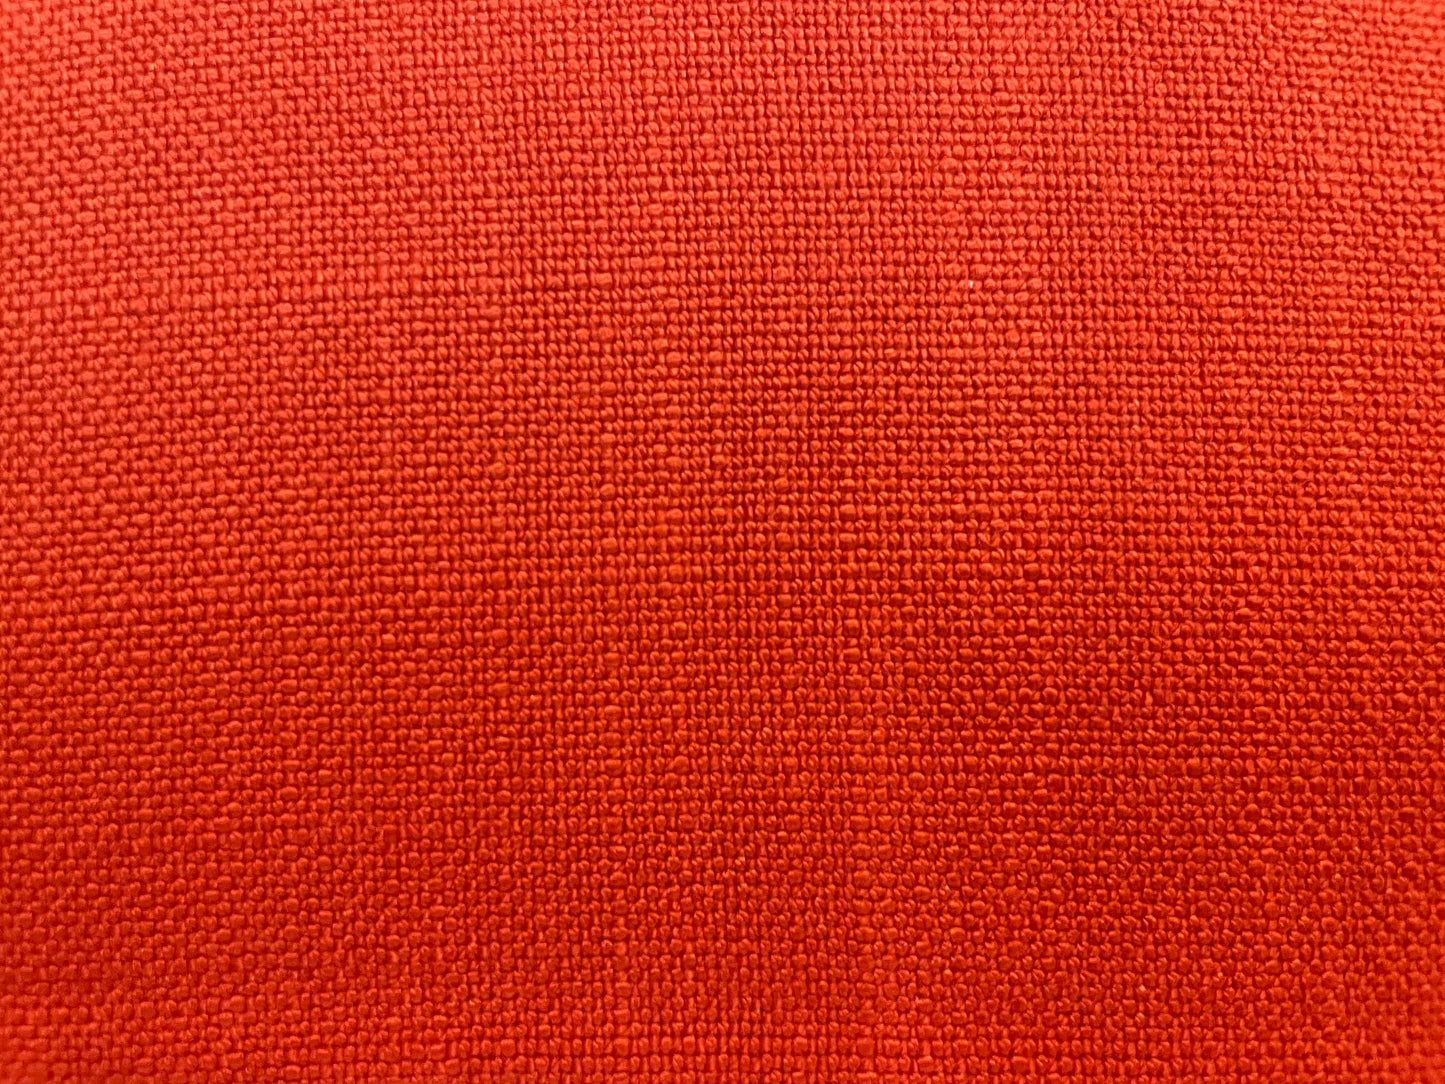 Textured Cotton/Linen Blend - Blood Orange